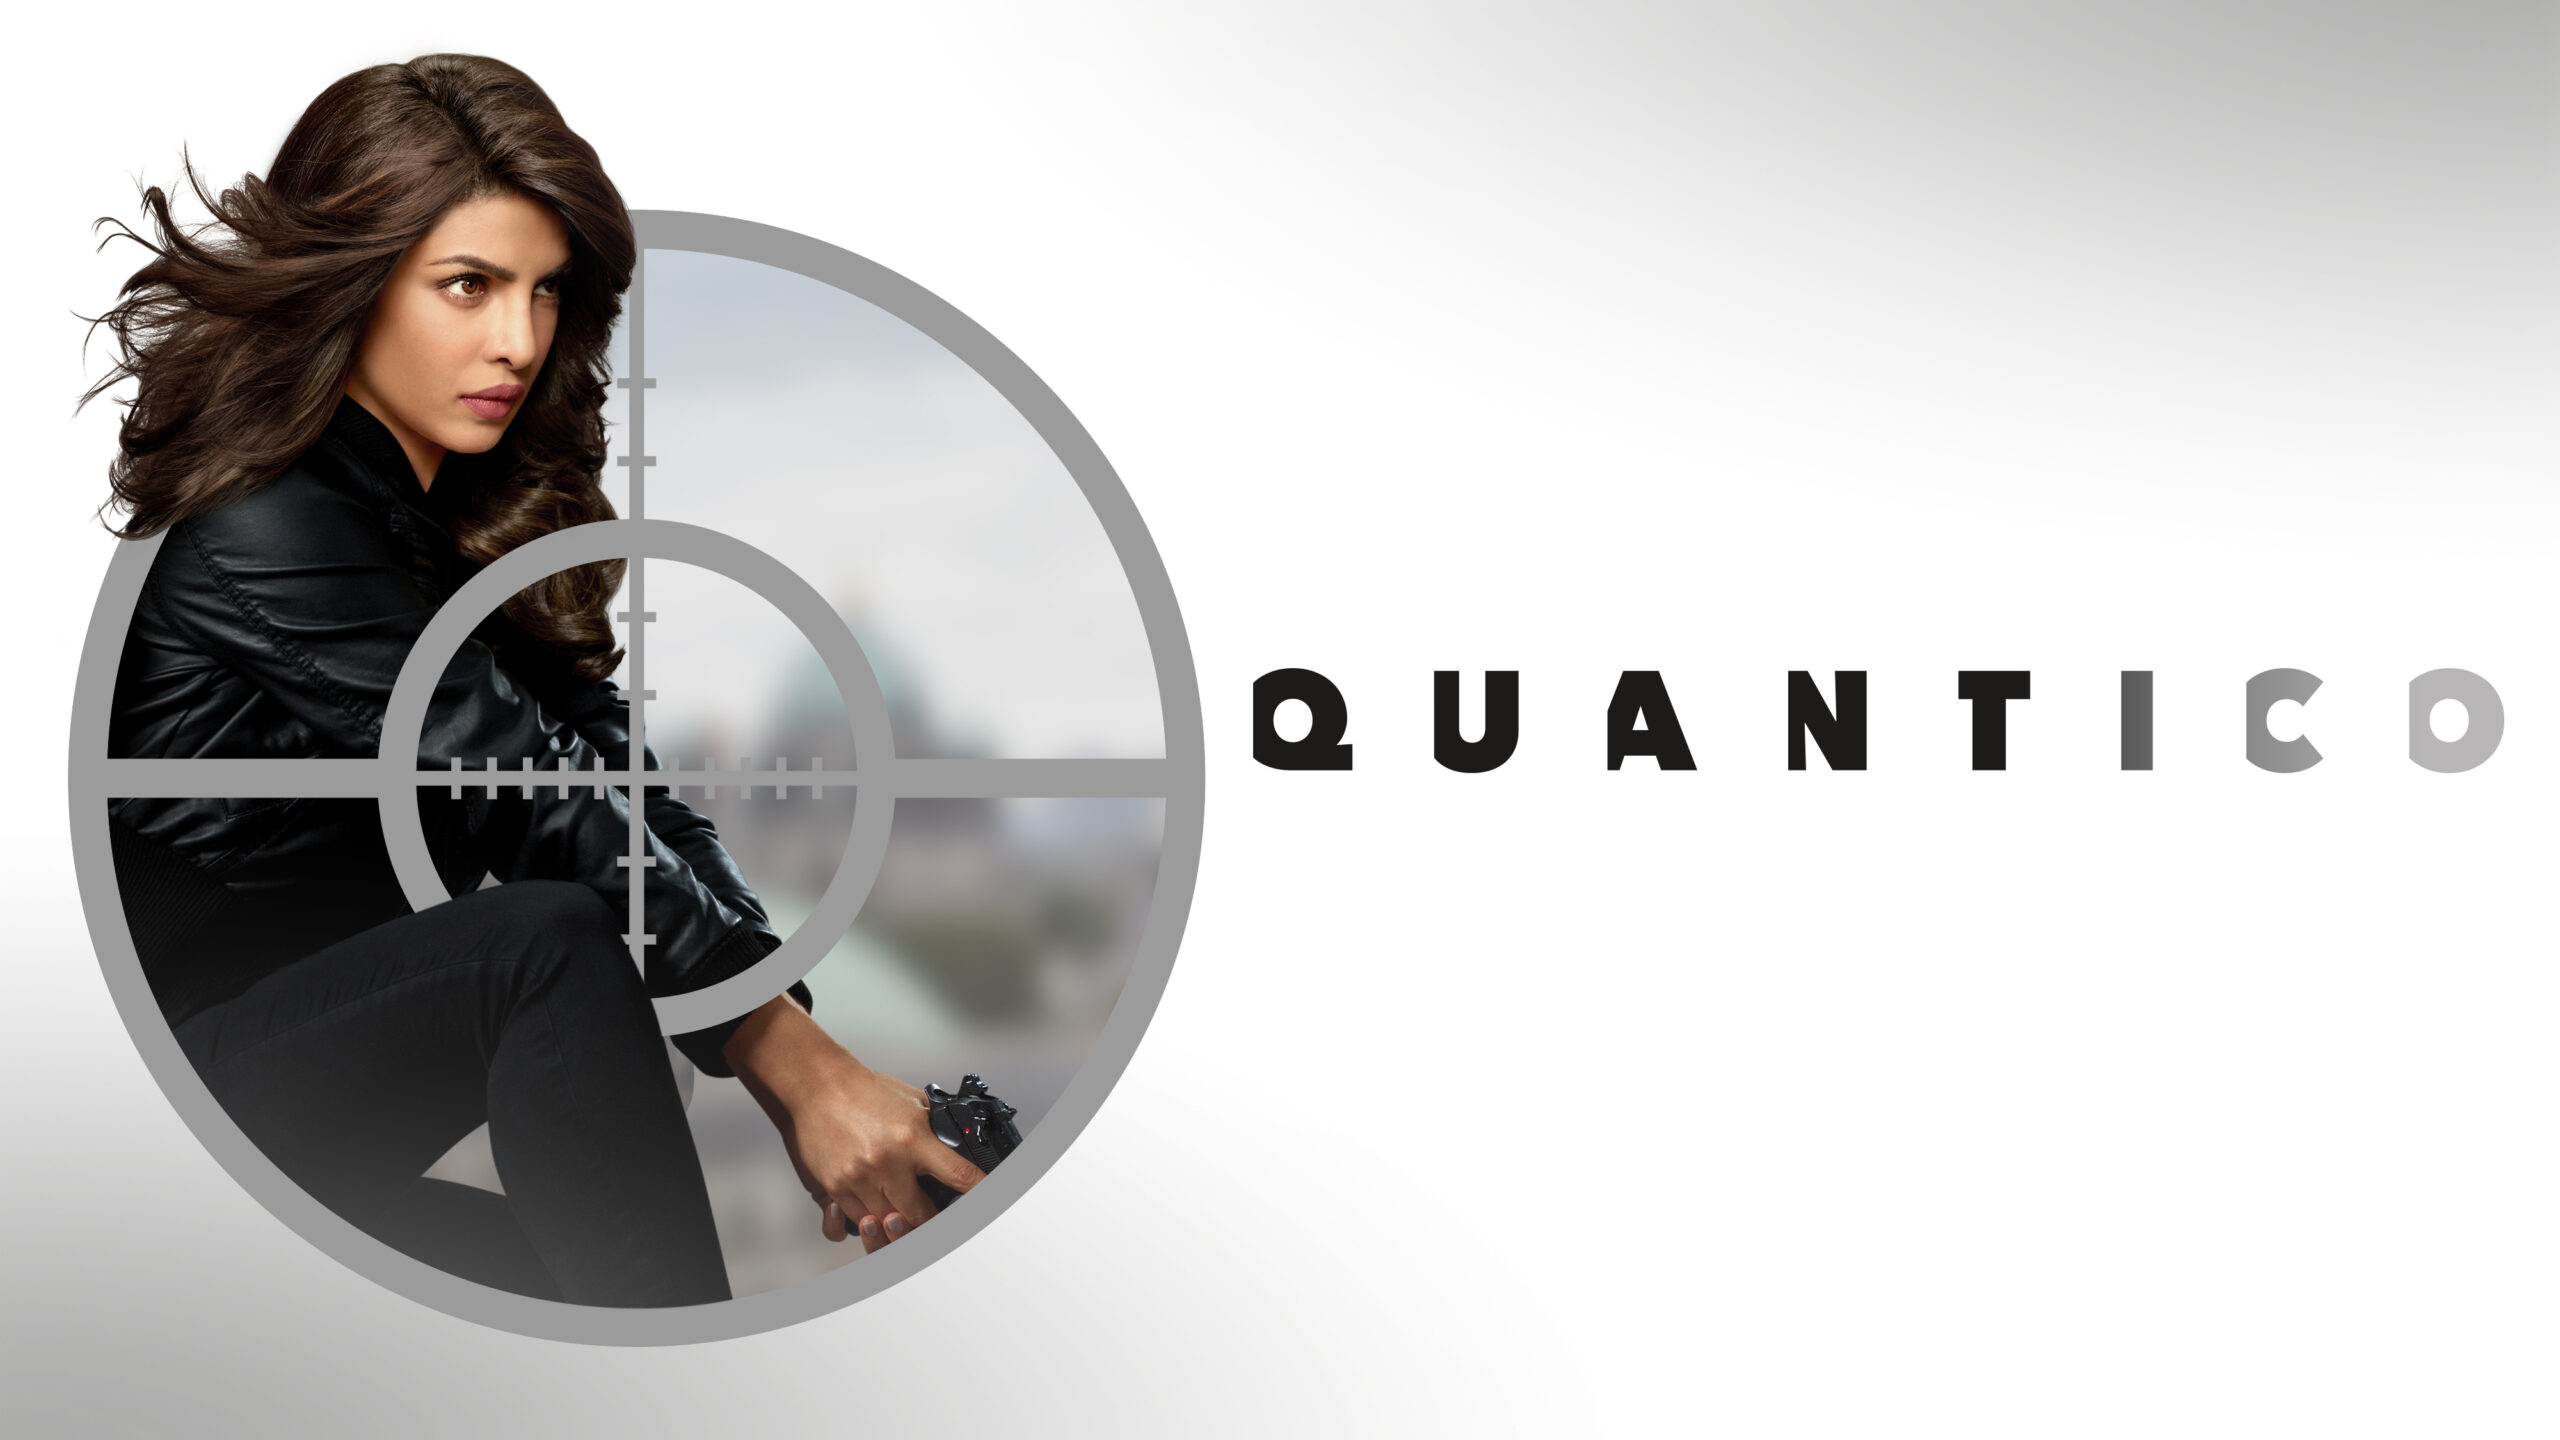 Quantico - Poster orizzontale [credit: courtesy of Disney Italia]